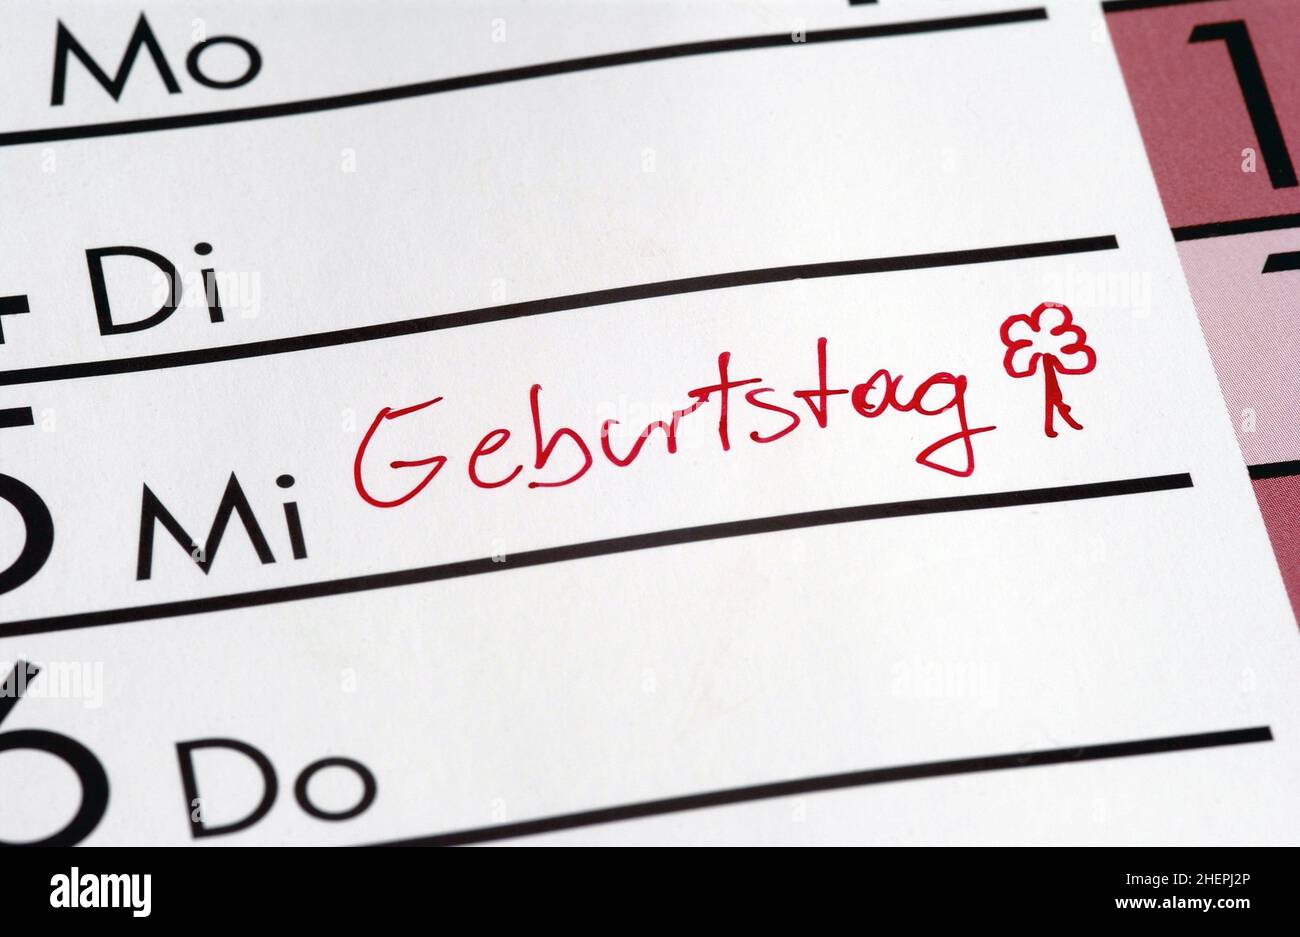 birthday, Geburtstag as a calendar entry, Germany Stock Photo